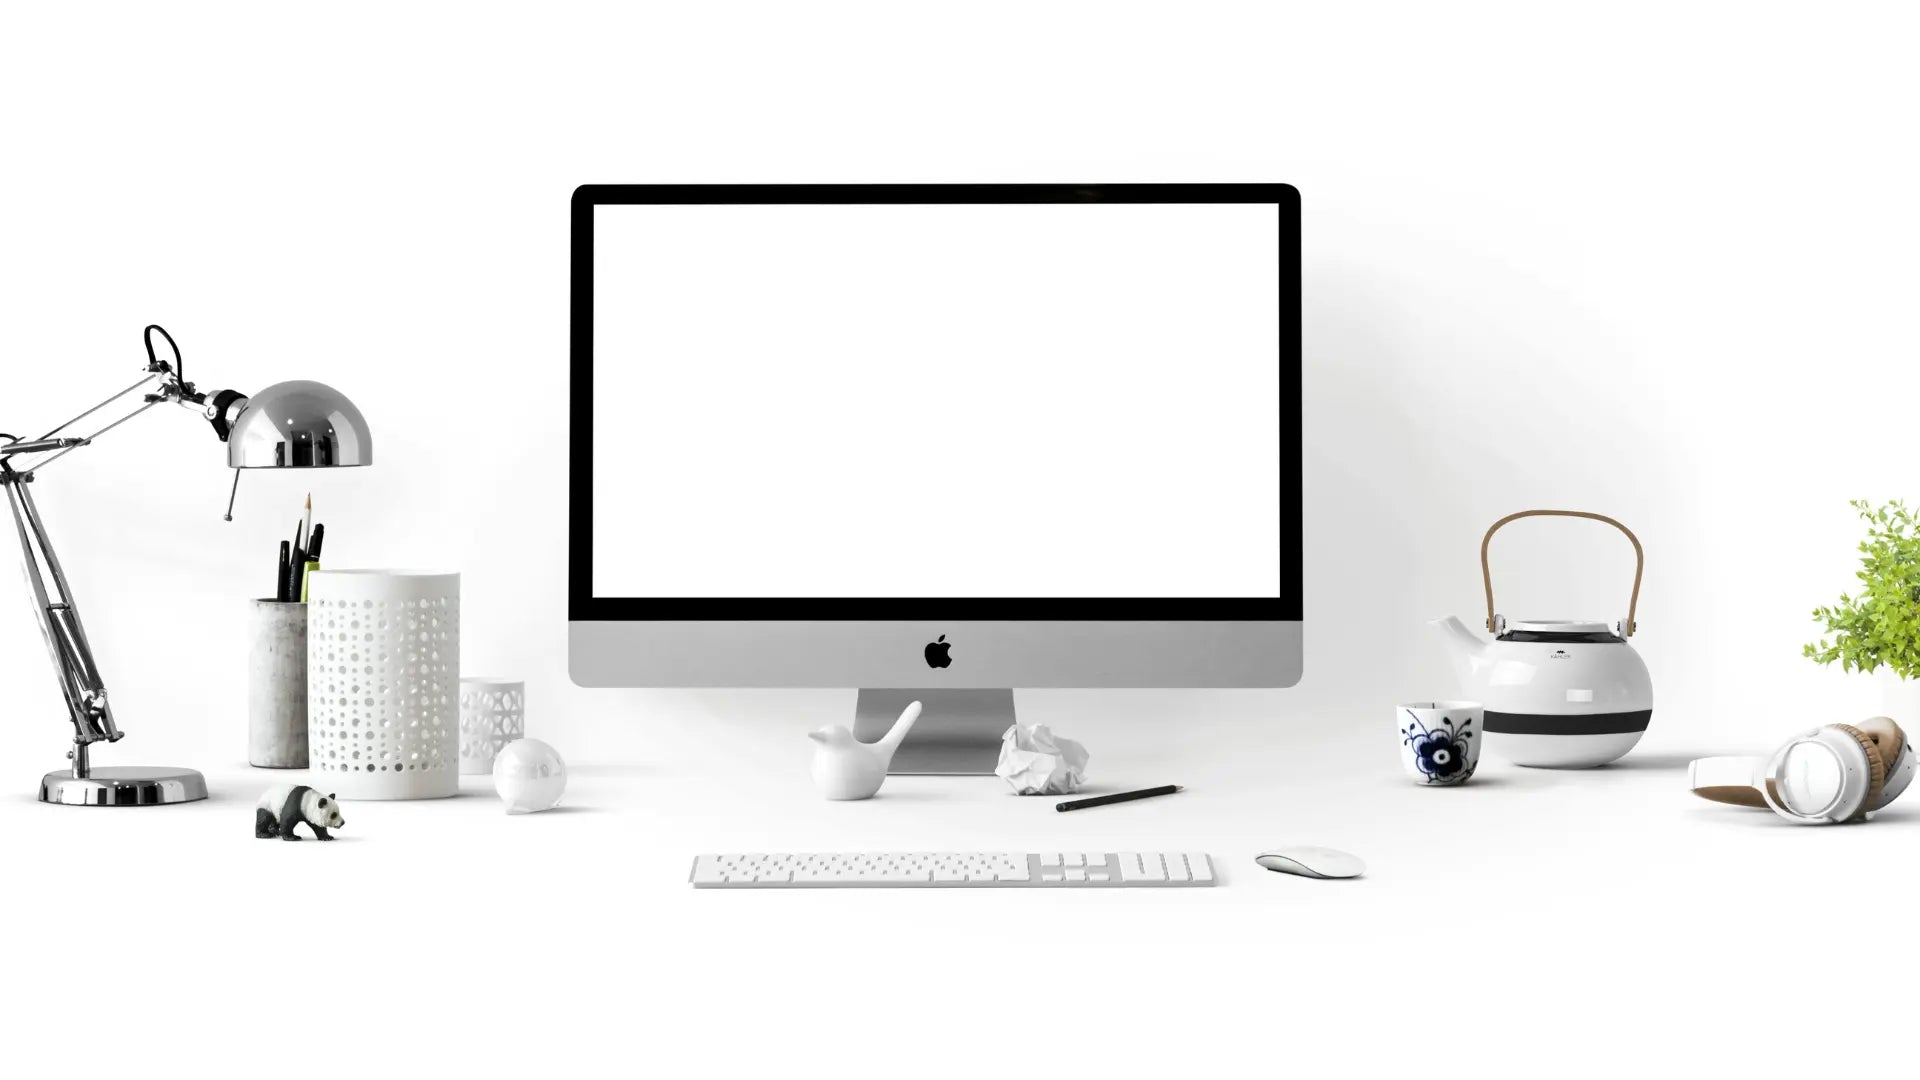 Mac desktop accessories